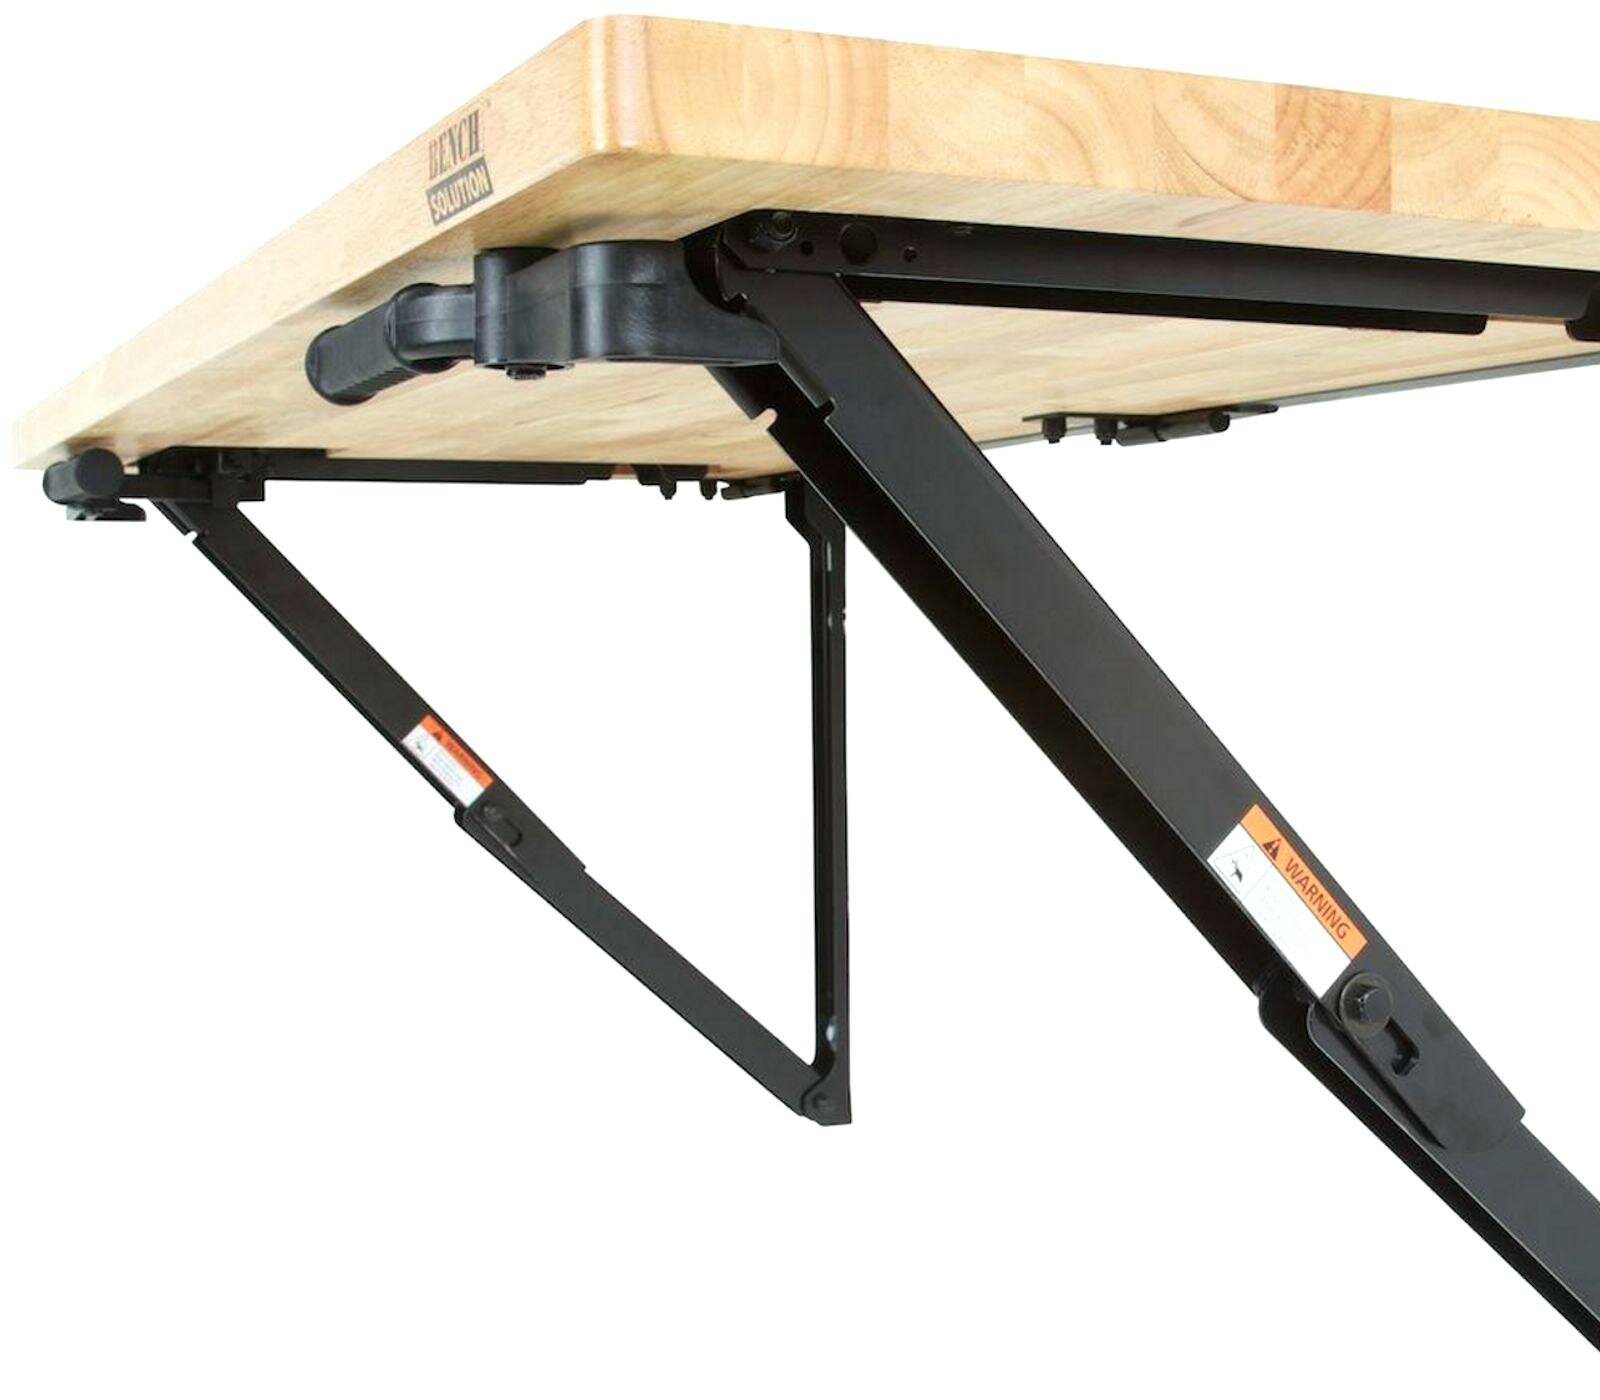 Home Depot Folding Workbench | Wall Mounted Folding Workbench | Bench Solution Folding Workbench